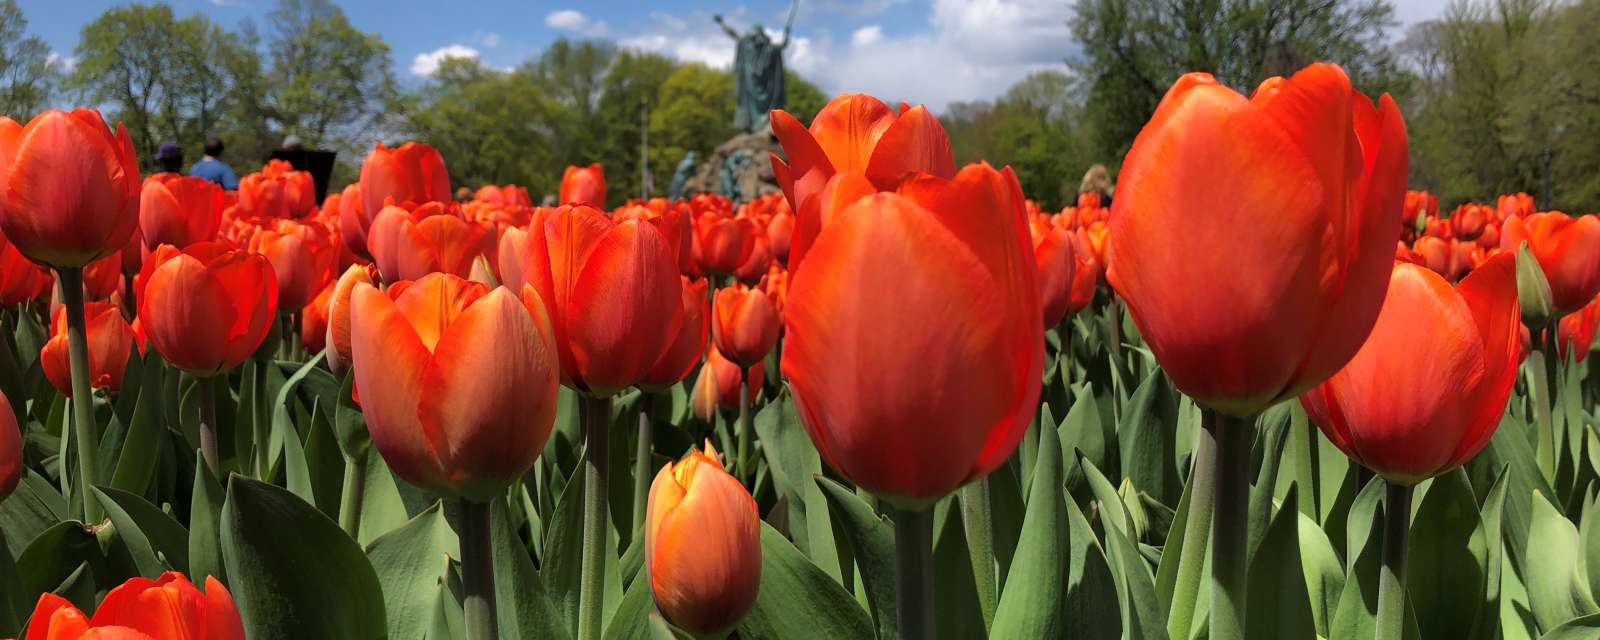 Washington Park tulips